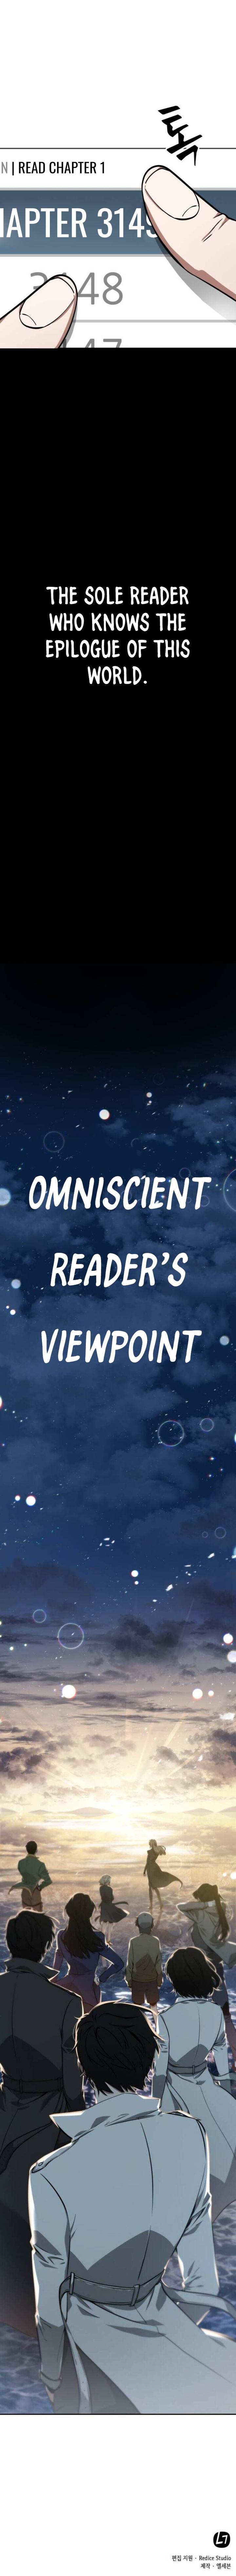 omniscient_readers_viewpoint_0_6